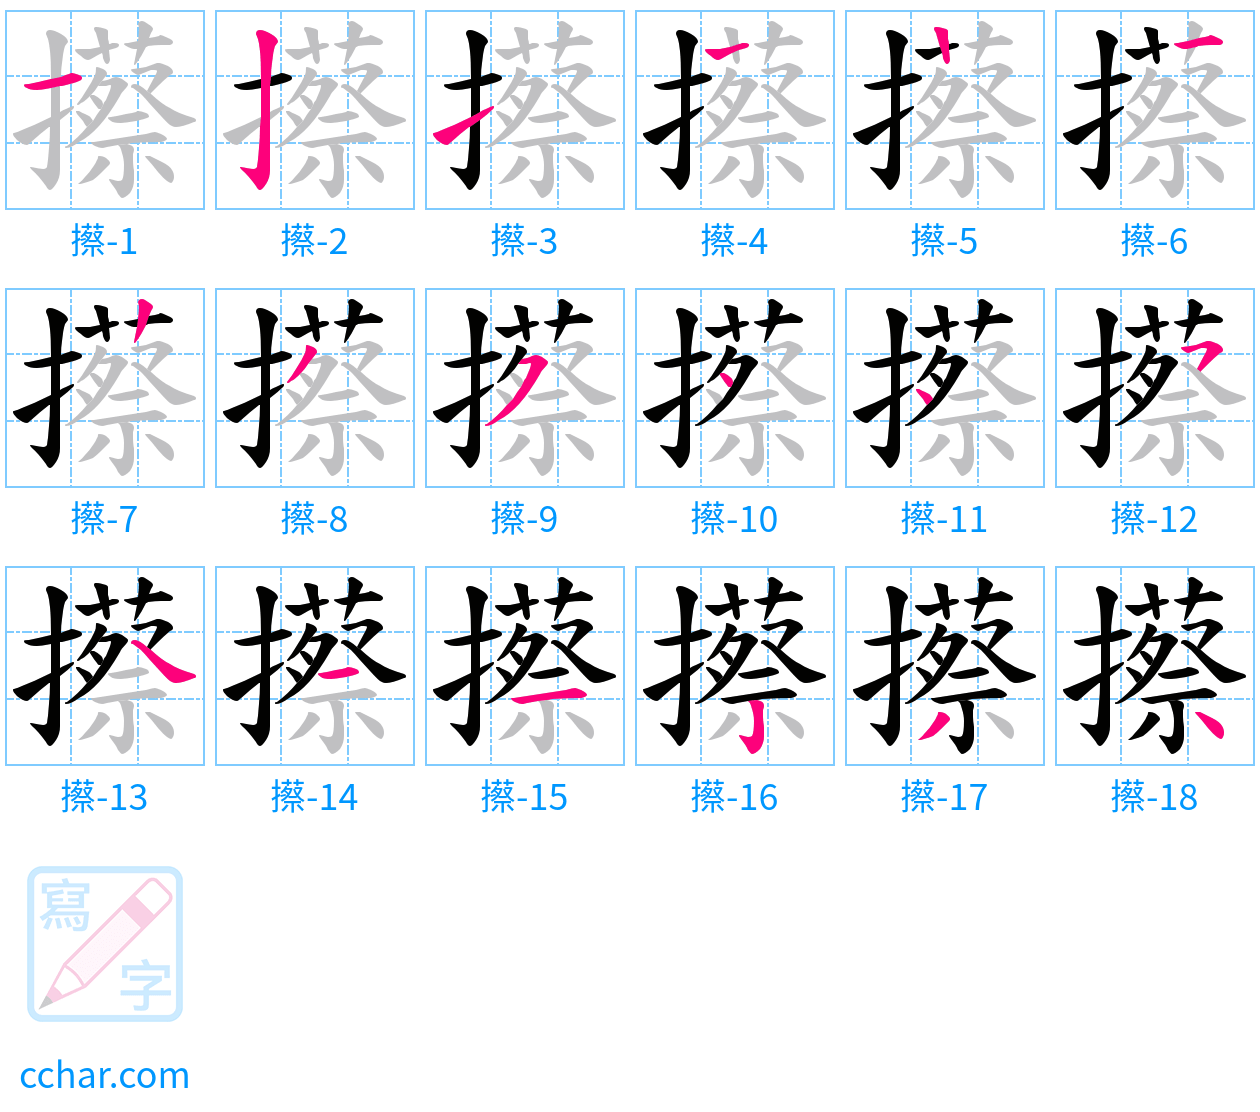 攃 stroke order step-by-step diagram